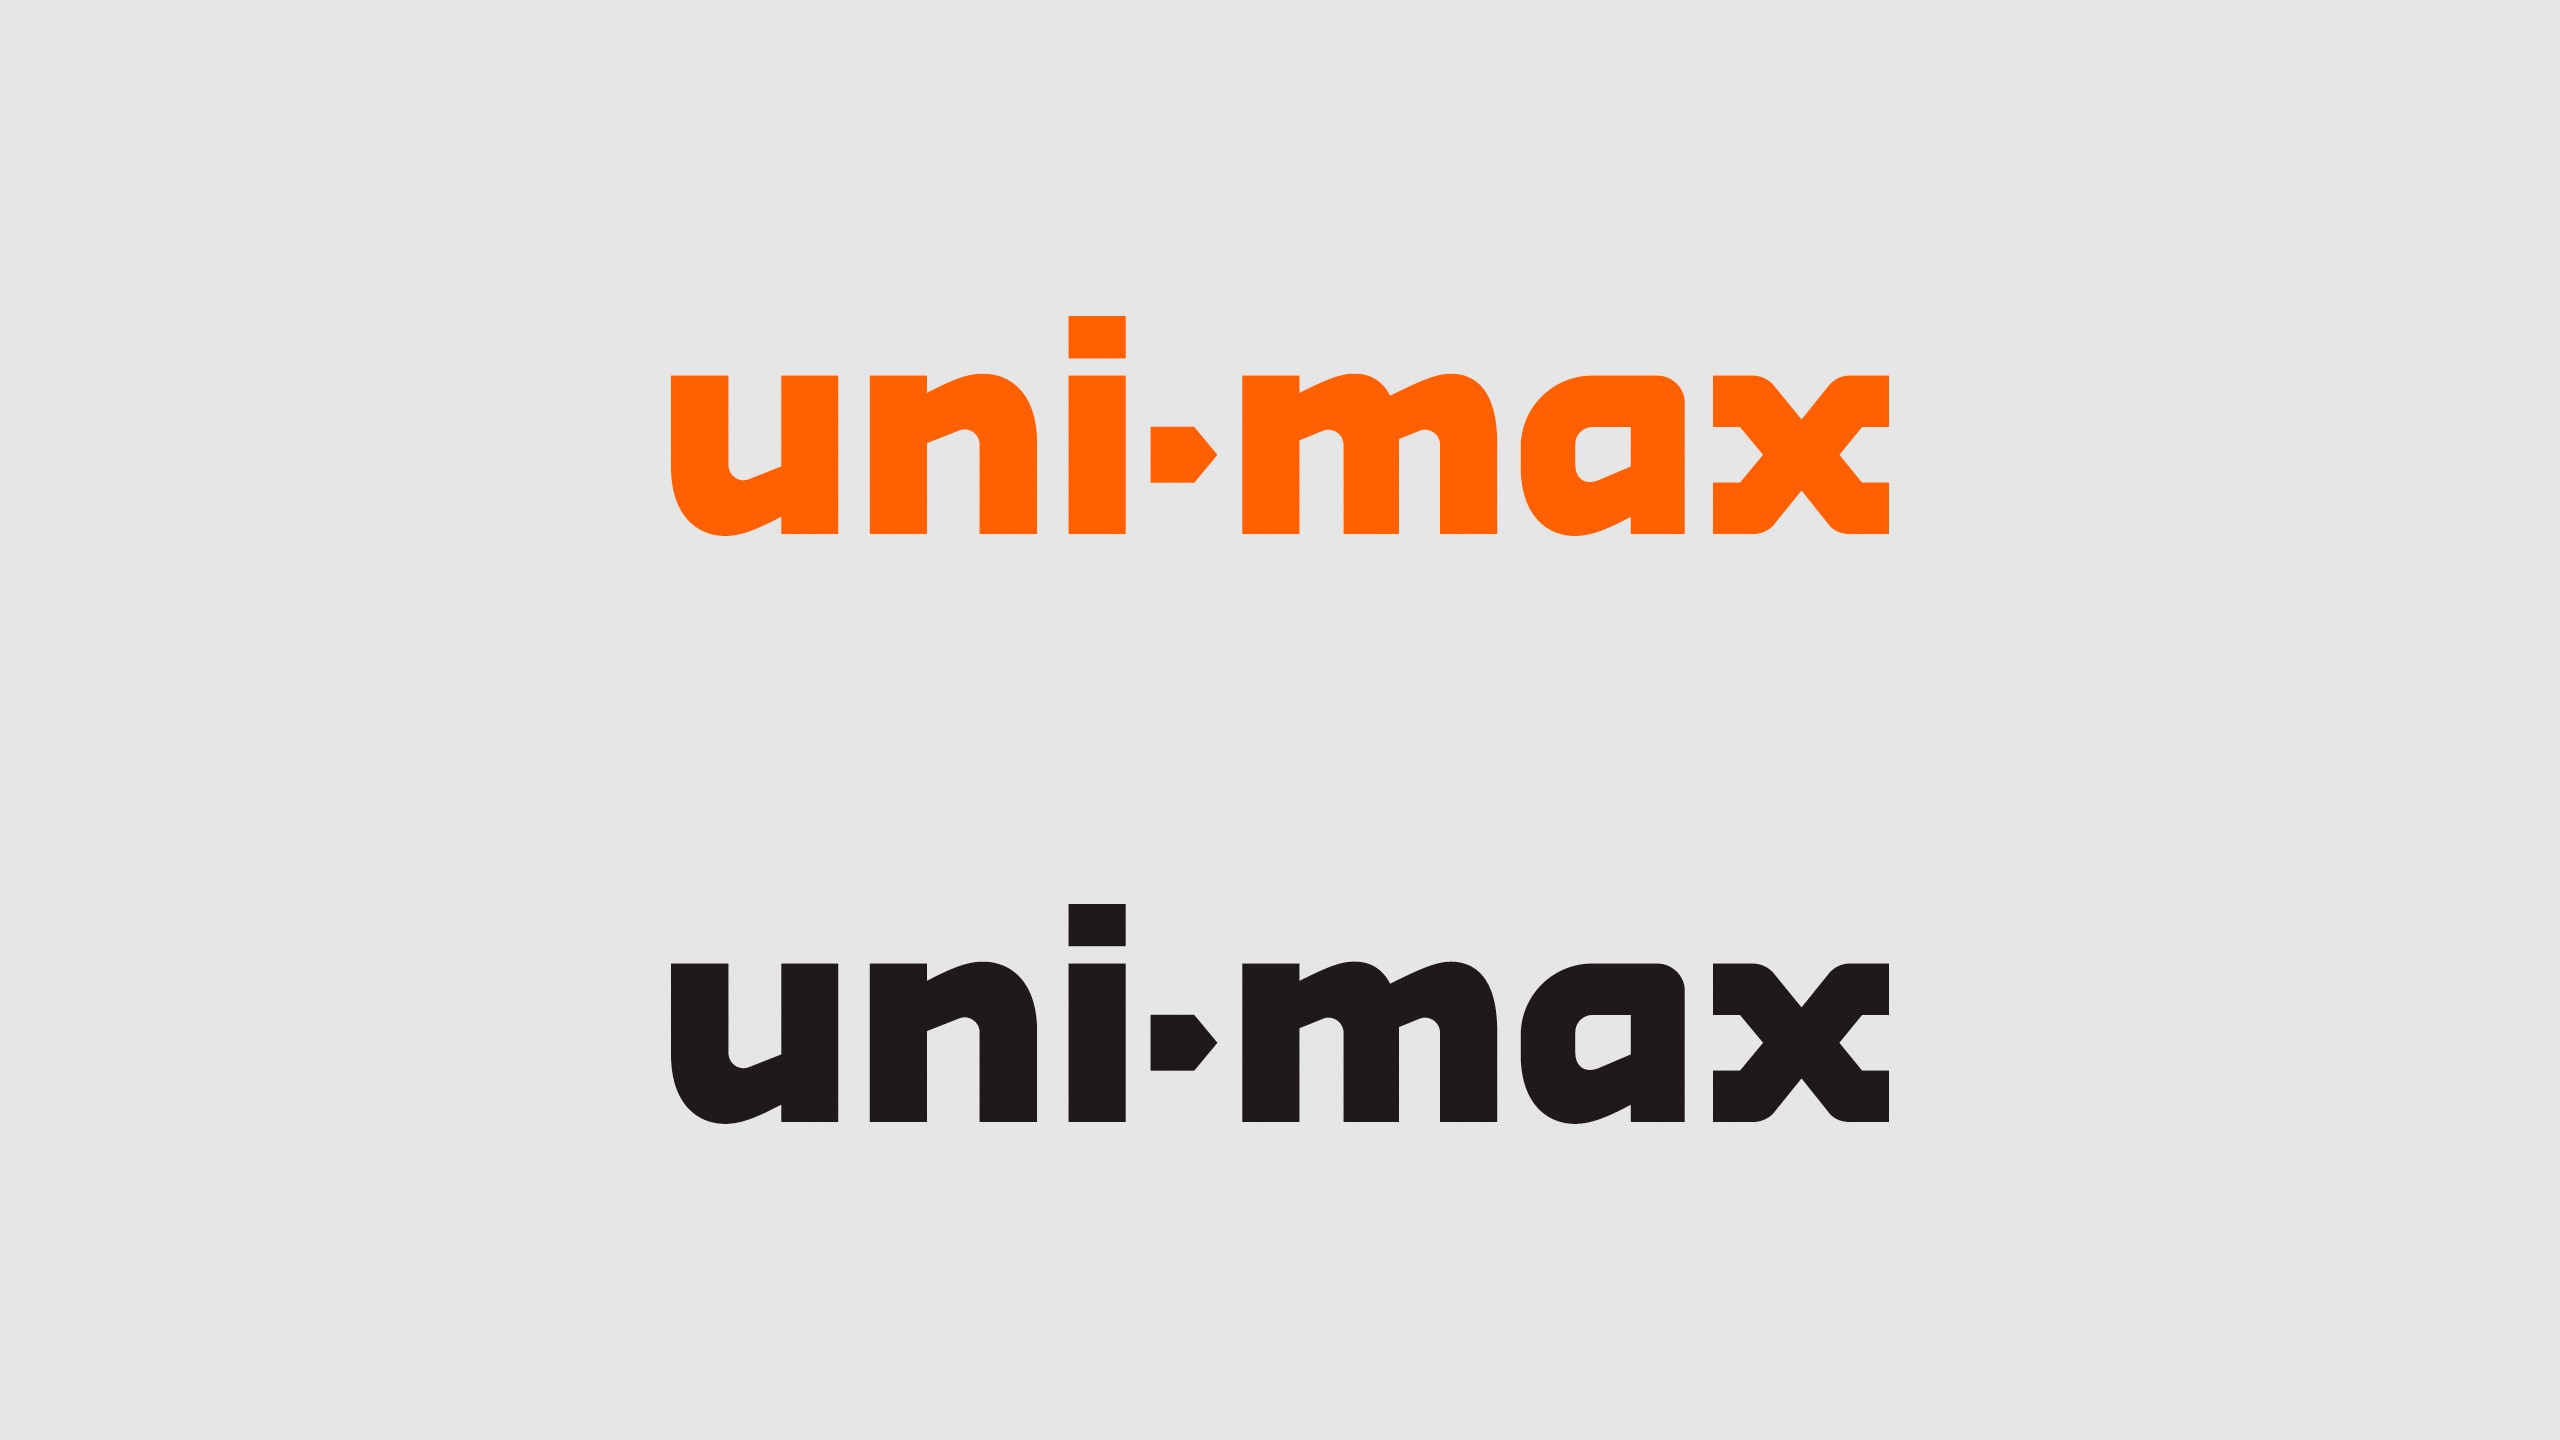 UNI-MAX1